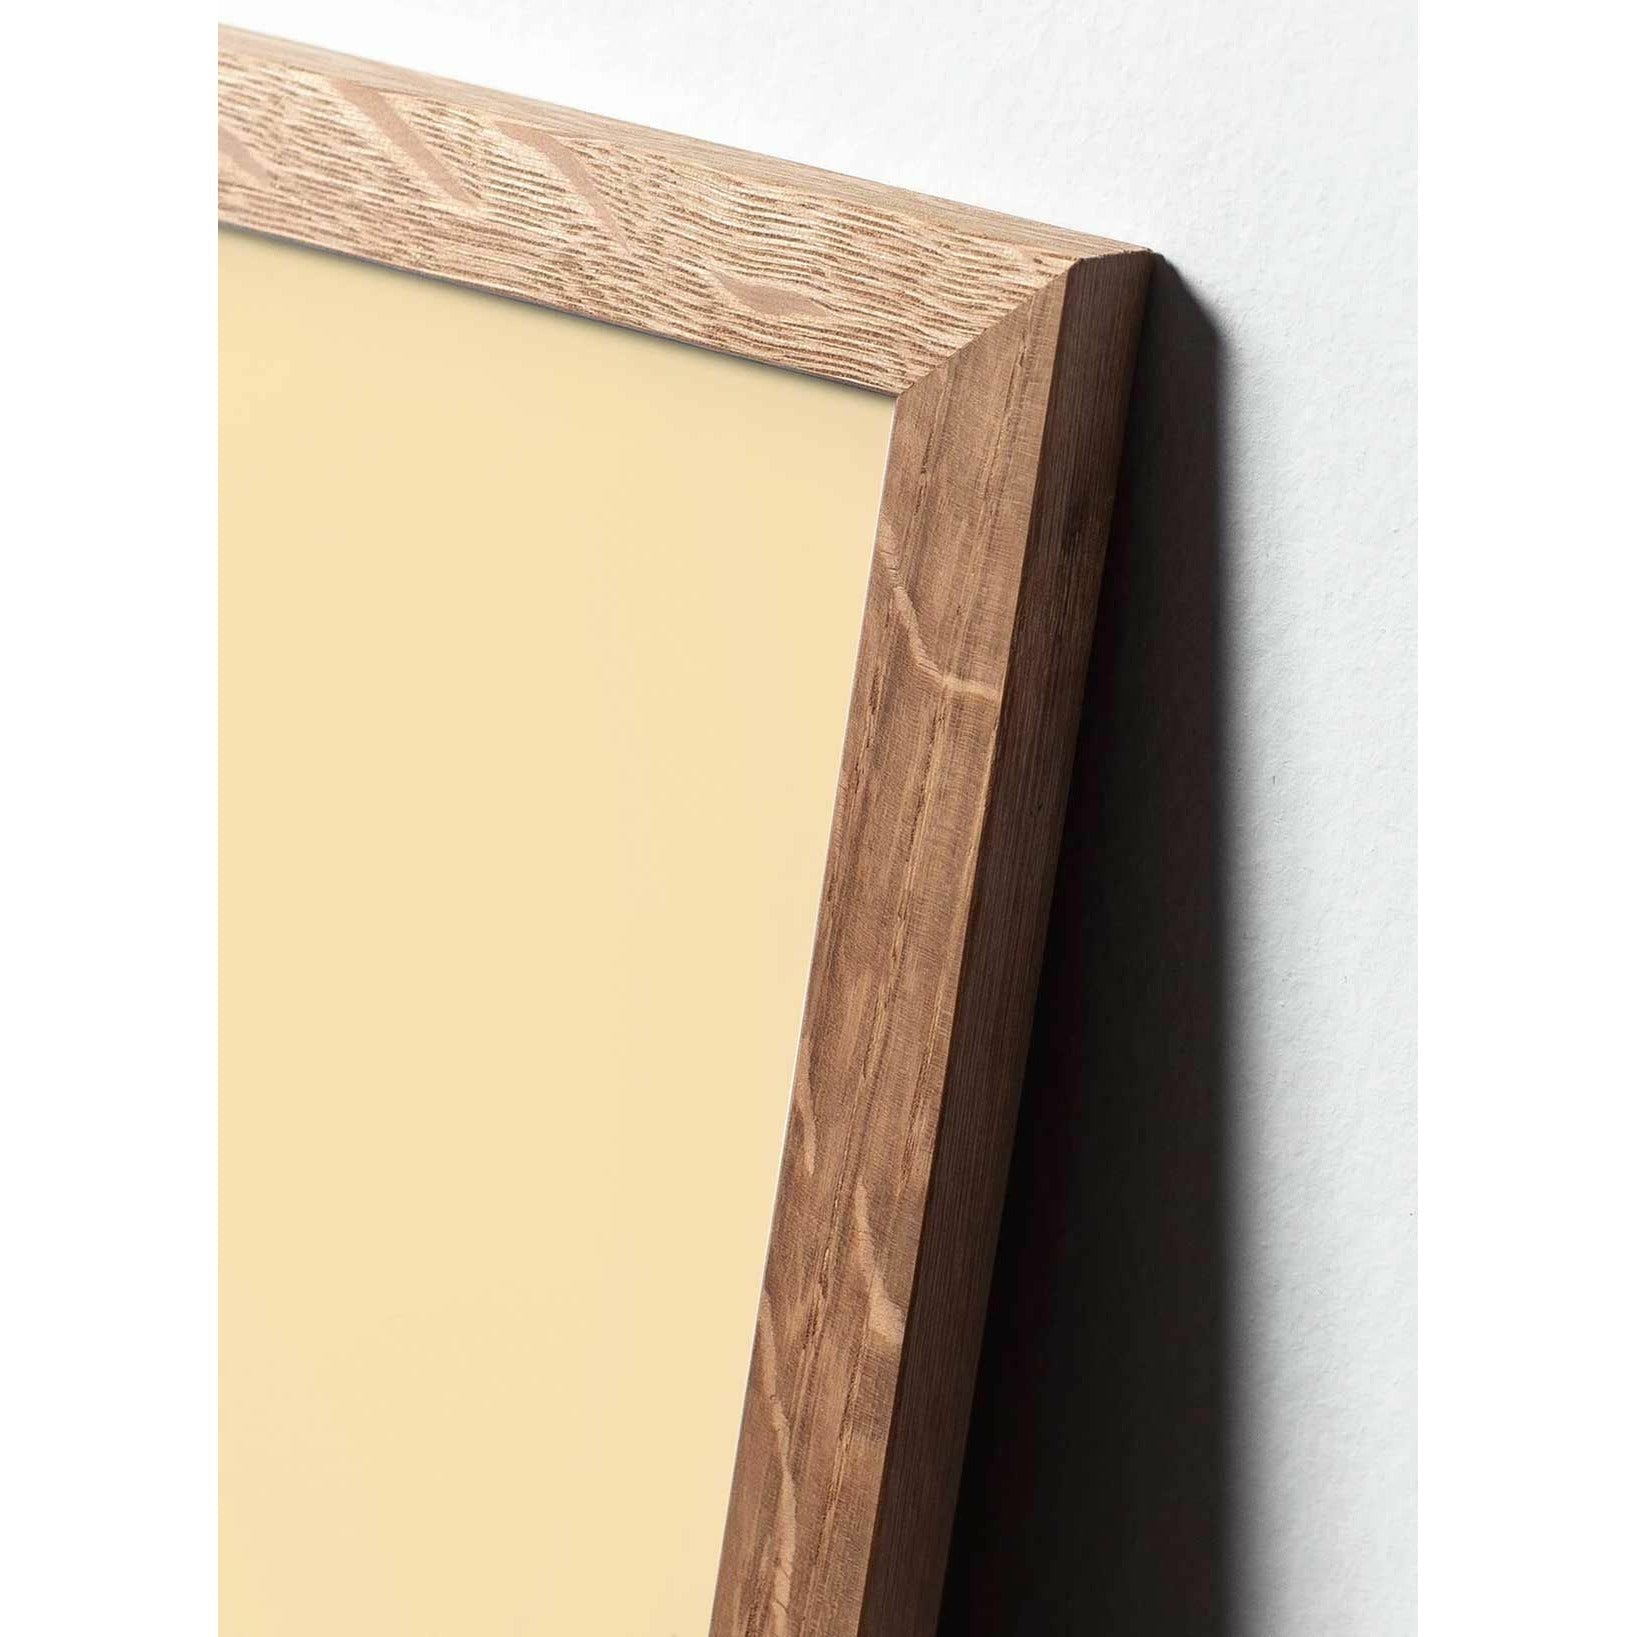 Pomysły plakat linii stożkowej, rama wykonana z jasnego drewna 30x40 cm, białe tło